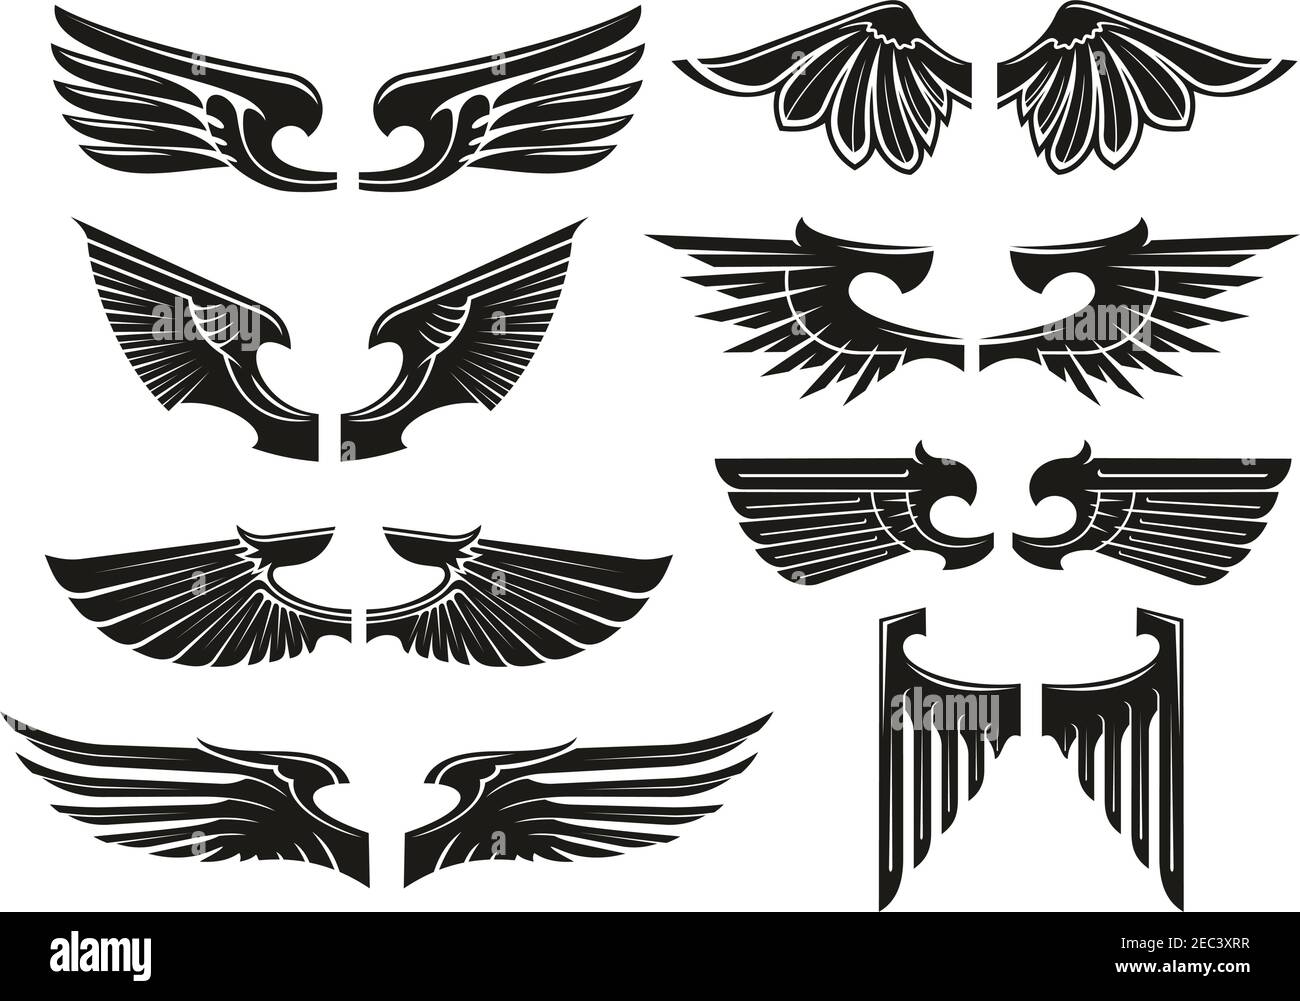 Spread Wings Design-Elemente für mittelalterliche Wappen, Tattoo oder Schmuck mit schwarzen Silhouetten paarweise heraldischen Flügeln Stock Vektor